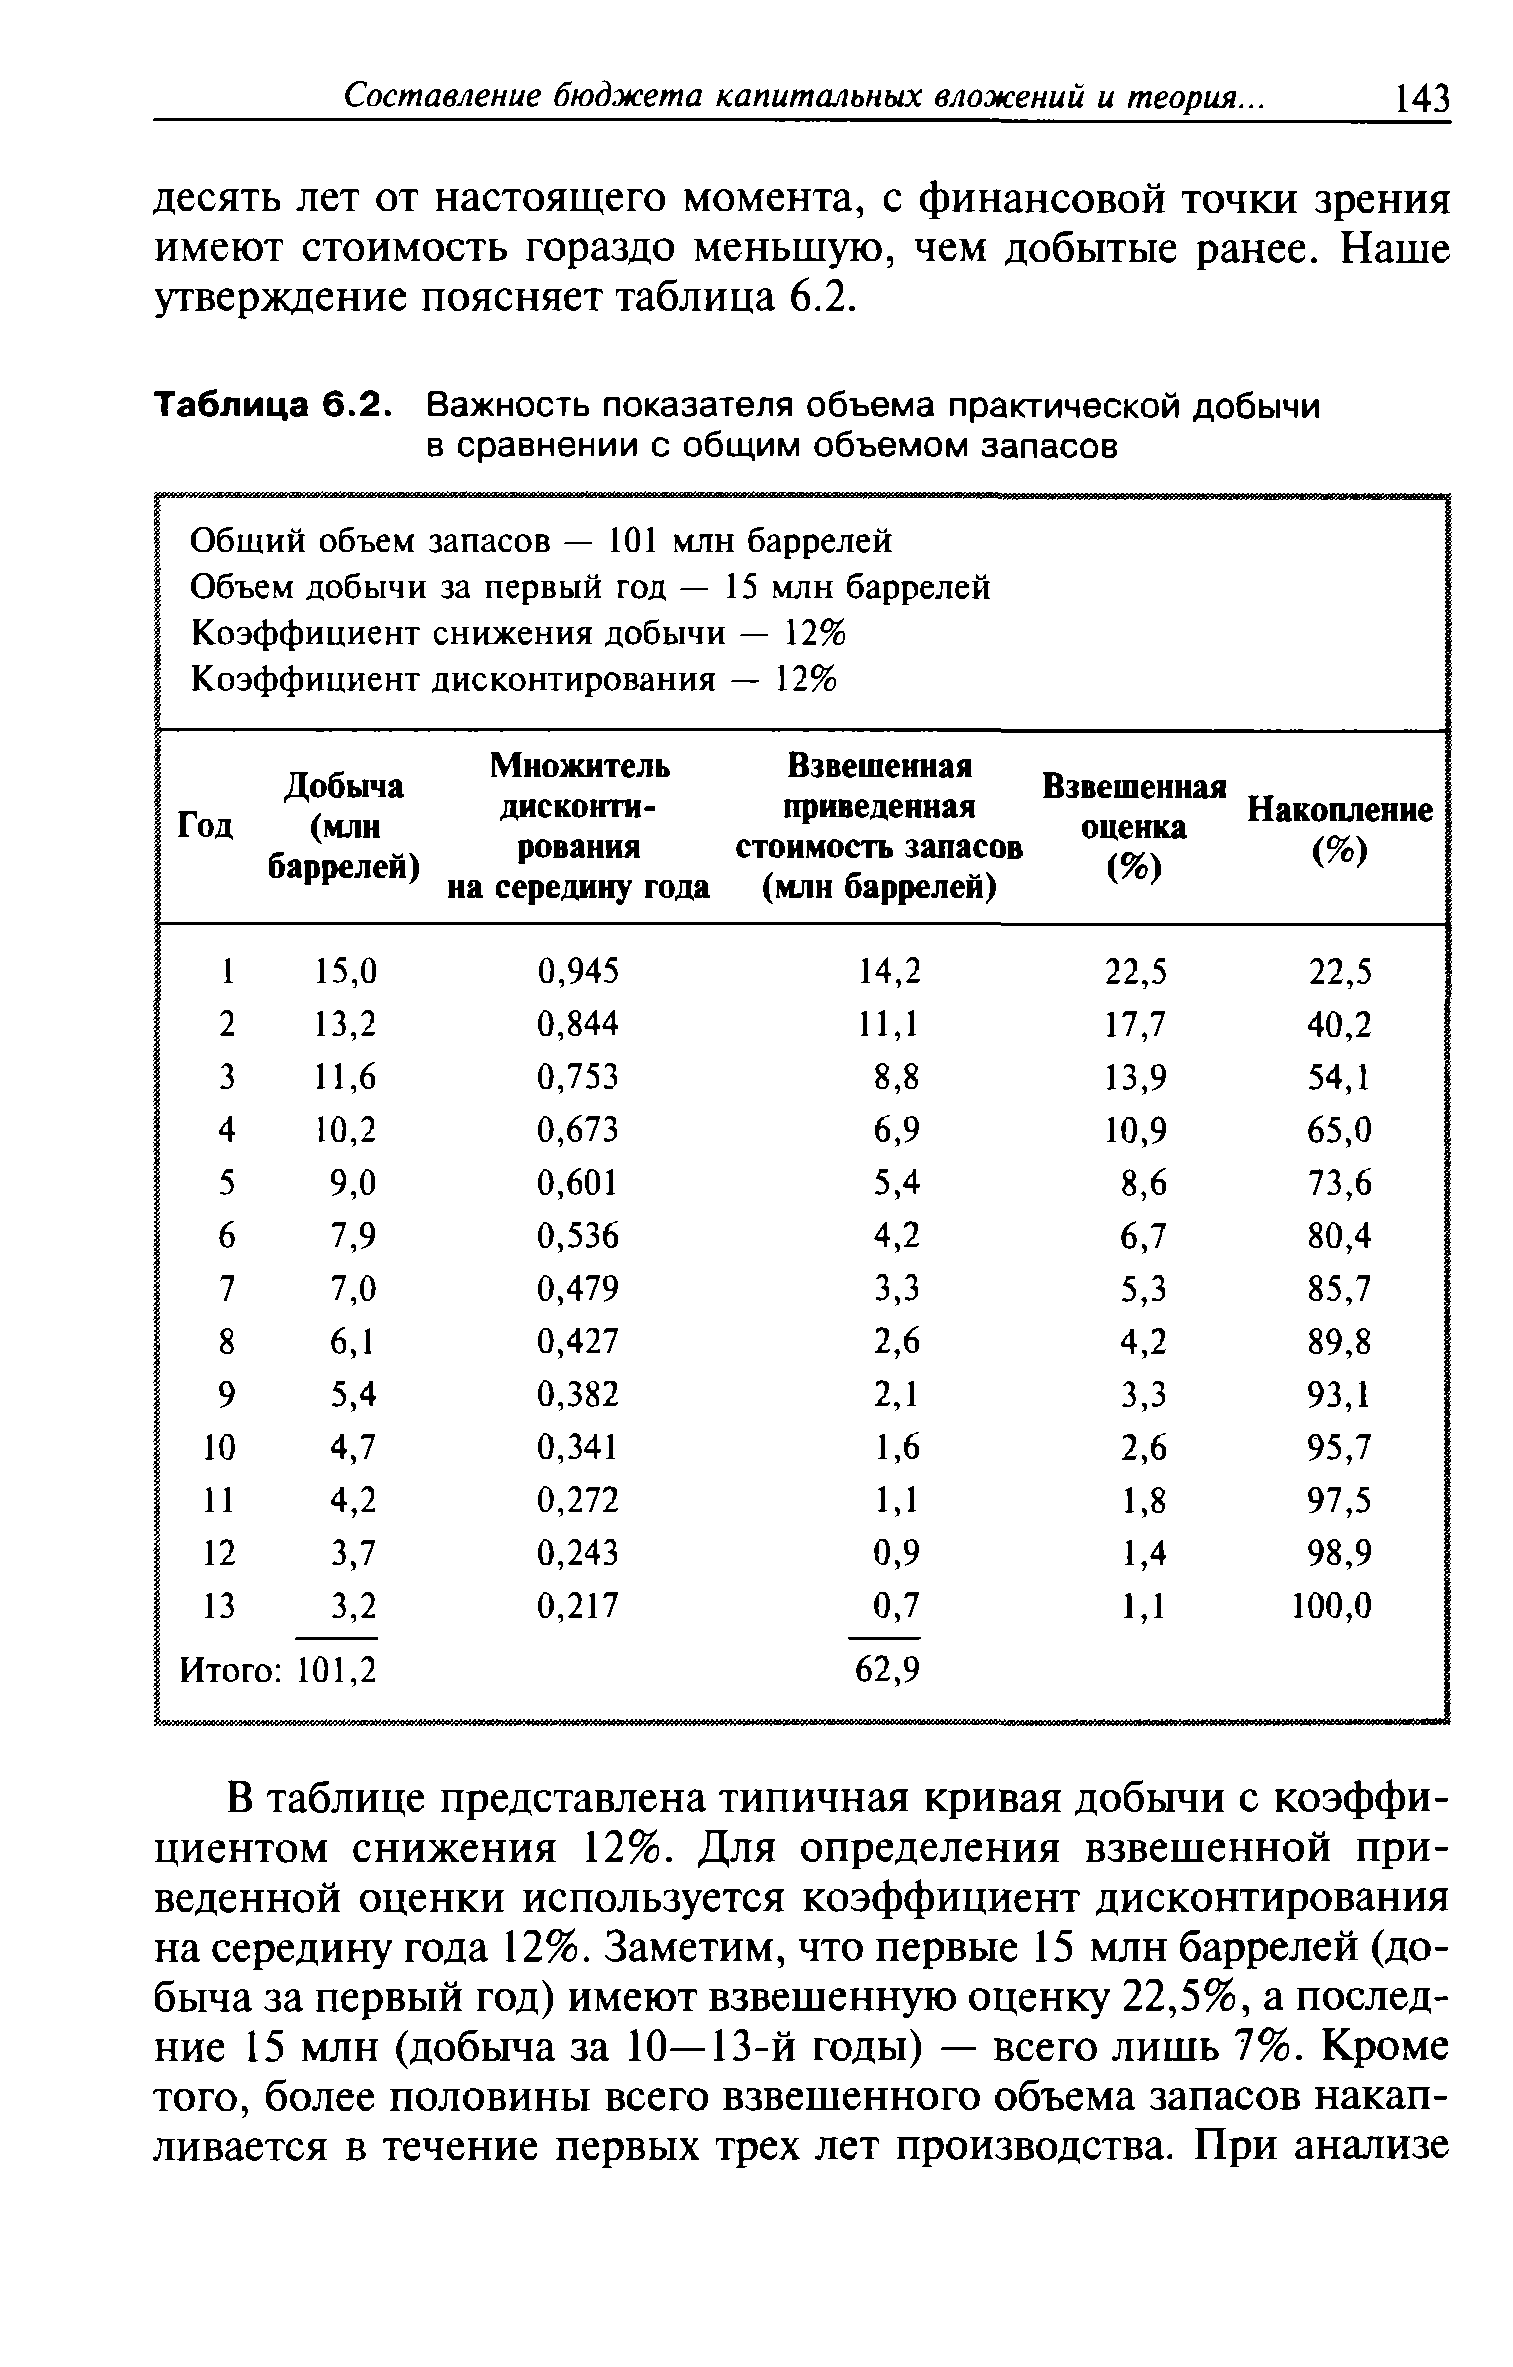 Таблица 6.2. Важность показателя объема практической добычи в сравнении с общим объемом запасов
